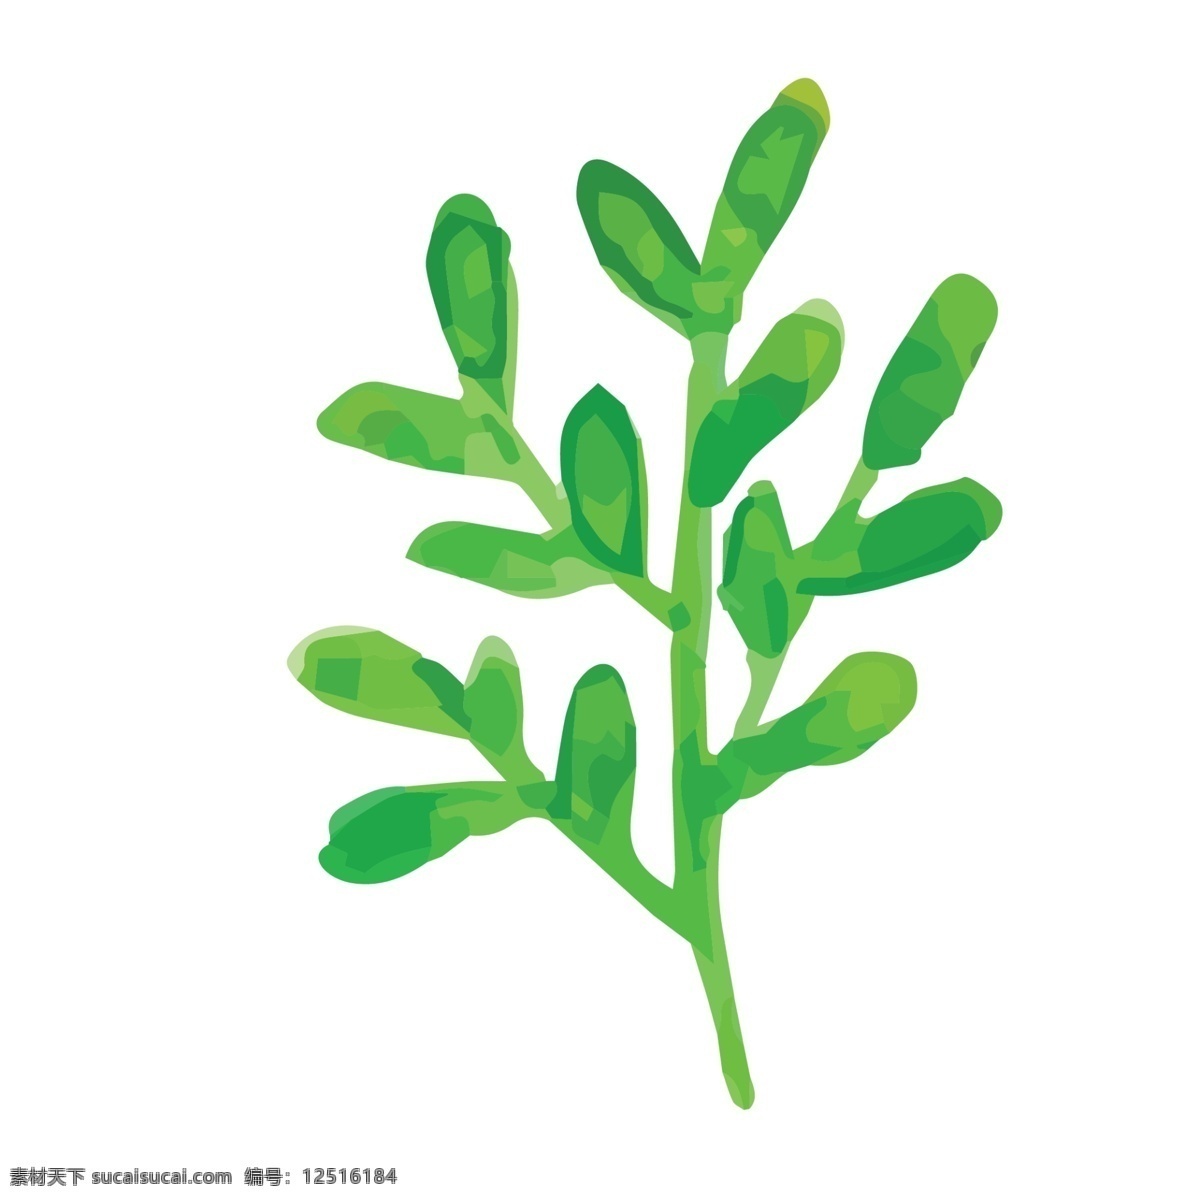 一根 树叶子 免 抠 图 枝叶子 绿色叶子 生态植物 植被生长 新鲜的植物 叶子生长 卡通手绘 手绘图案